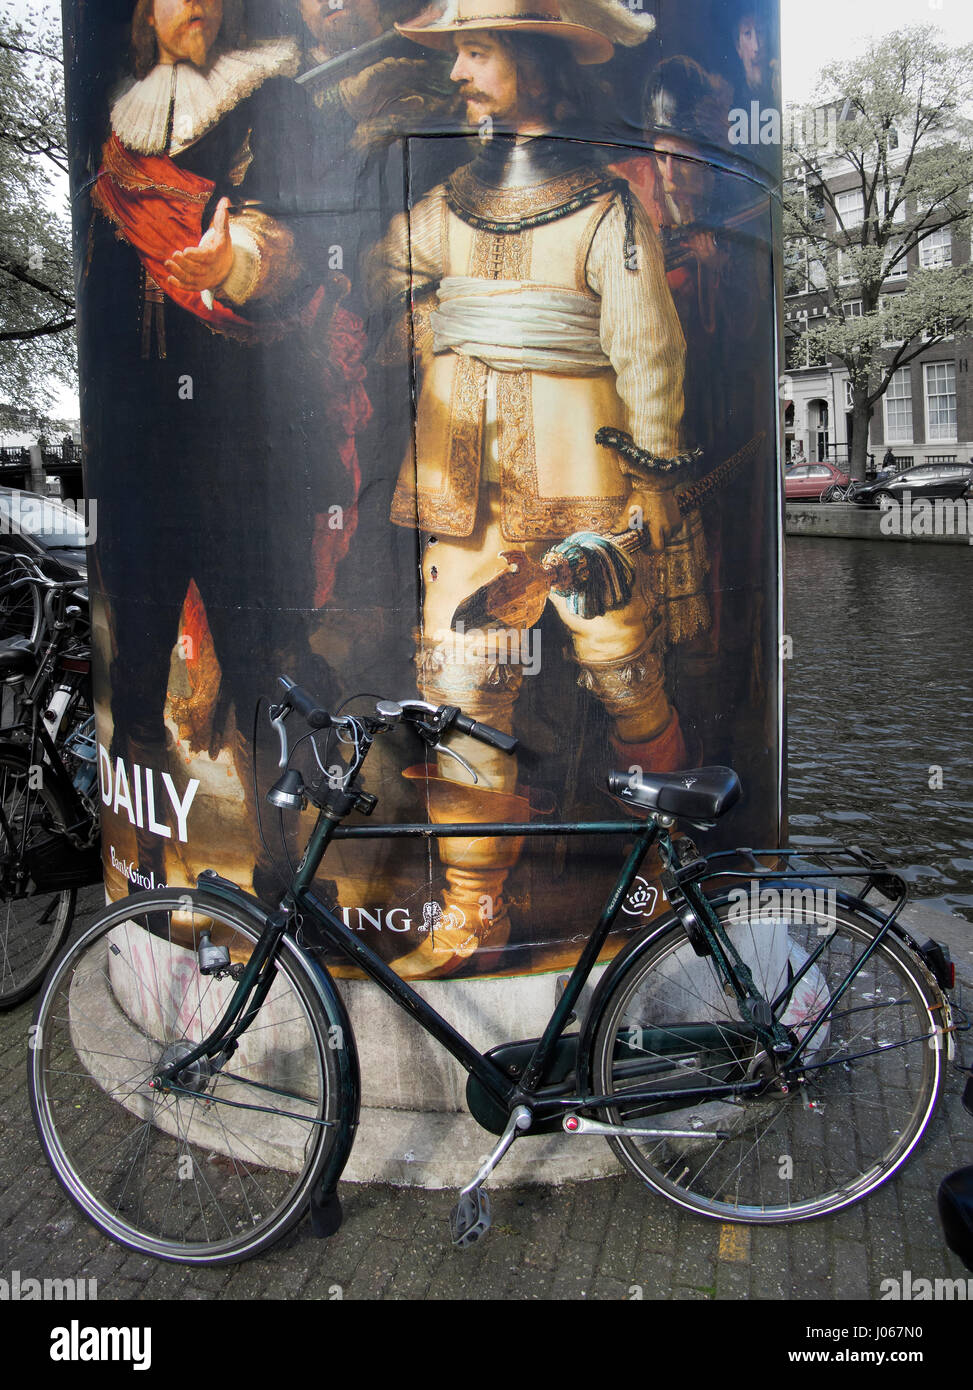 Les vélos garés dans le centre-ville d'Amsterdam, Pays-Bas Banque D'Images